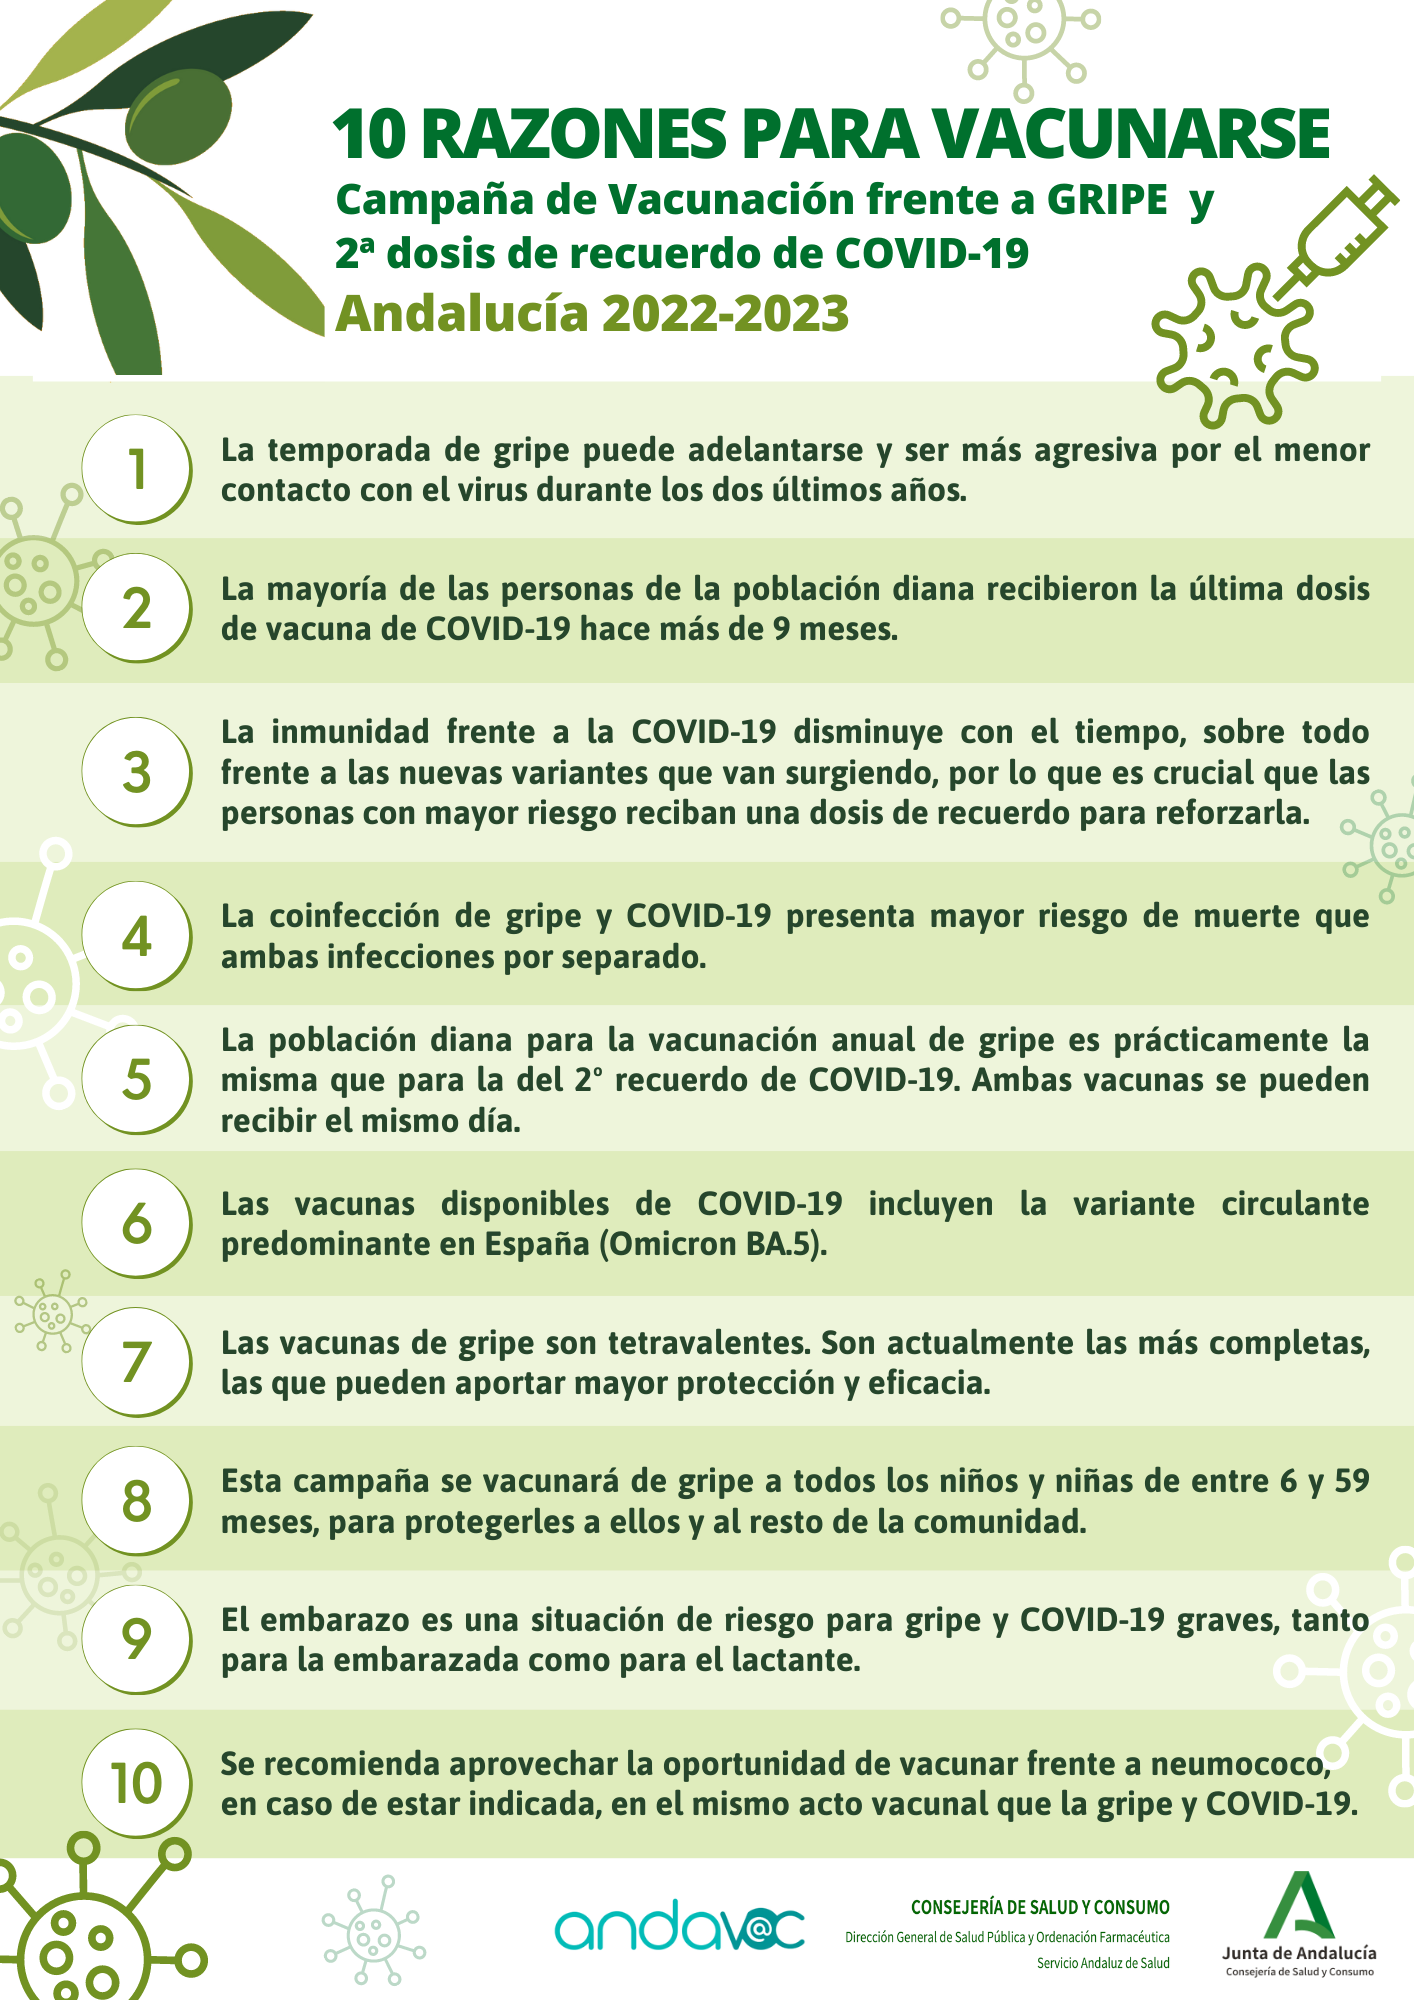 17 octubre 2022: La campaña de la Gripe-COVID en Andalucía sigue avanzando - Plan de Vacunaciones de Andalucía (Andavac)